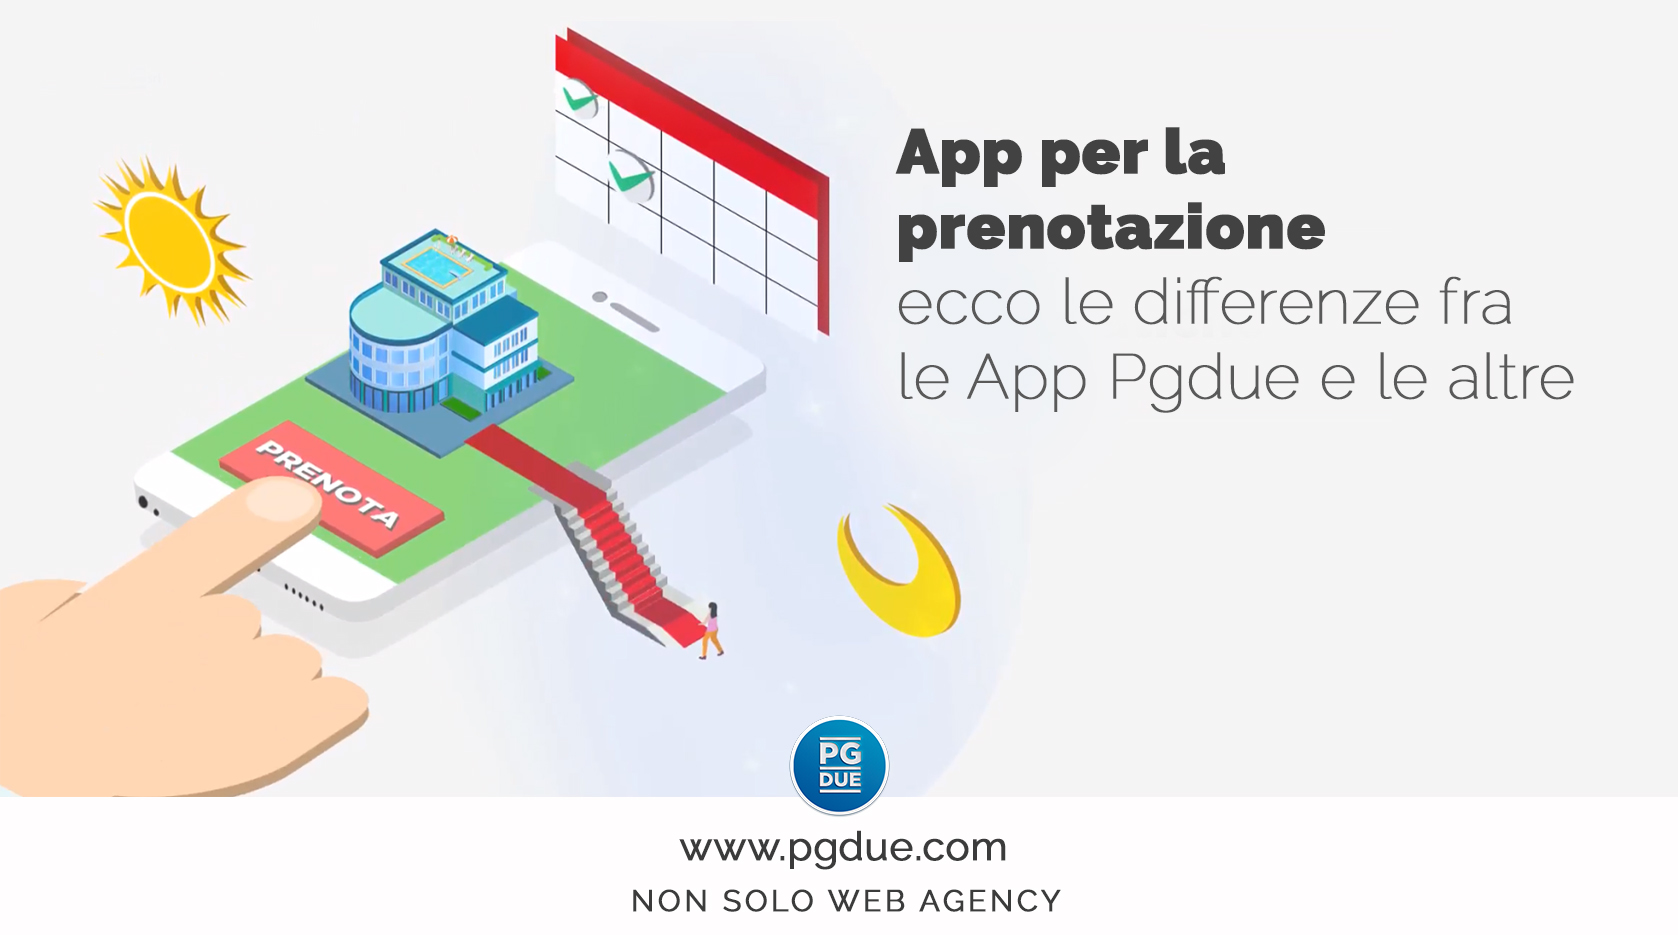 App per la prenotazione: ecco le differenze fra le App Pgdue e le altre